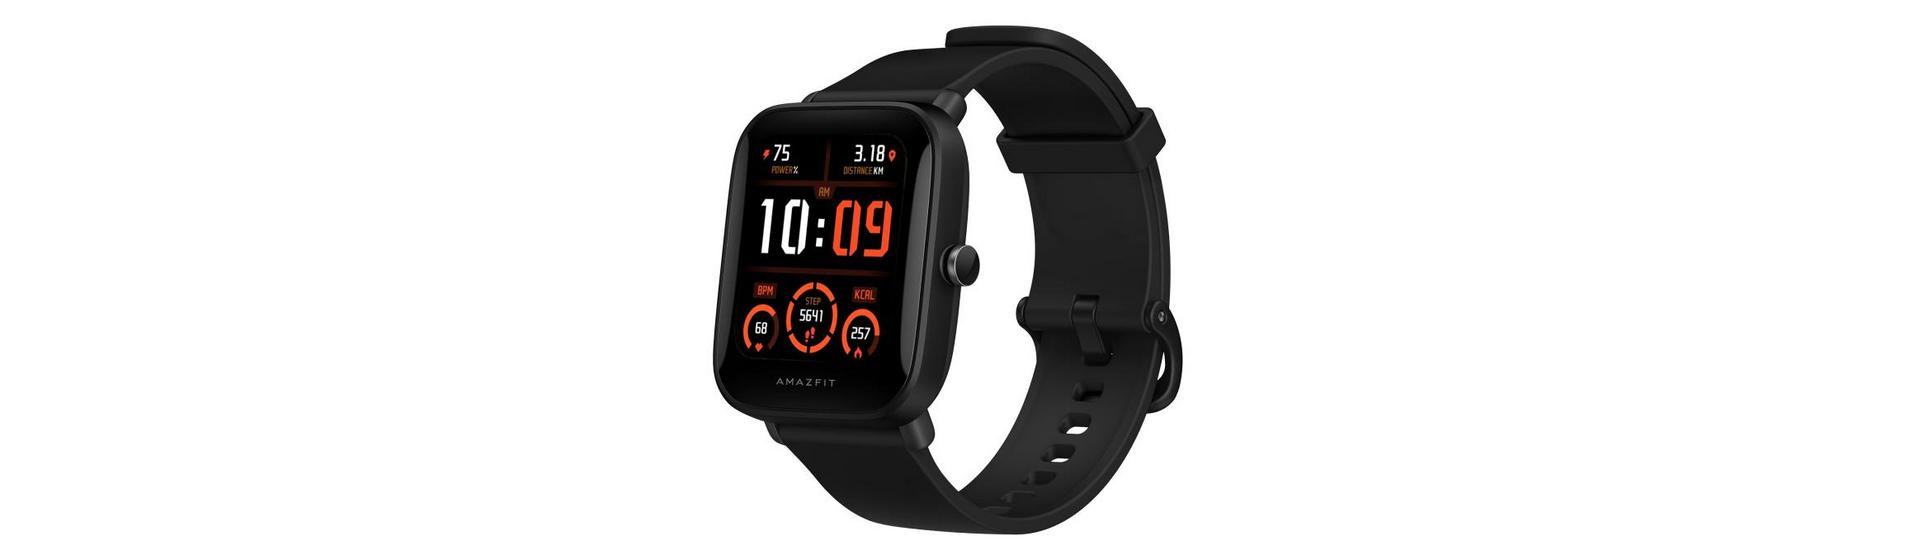 Promoção: Smartwatch Xiaomi Amazfit Bip U Pro GPS por R$334,90* na Amazon